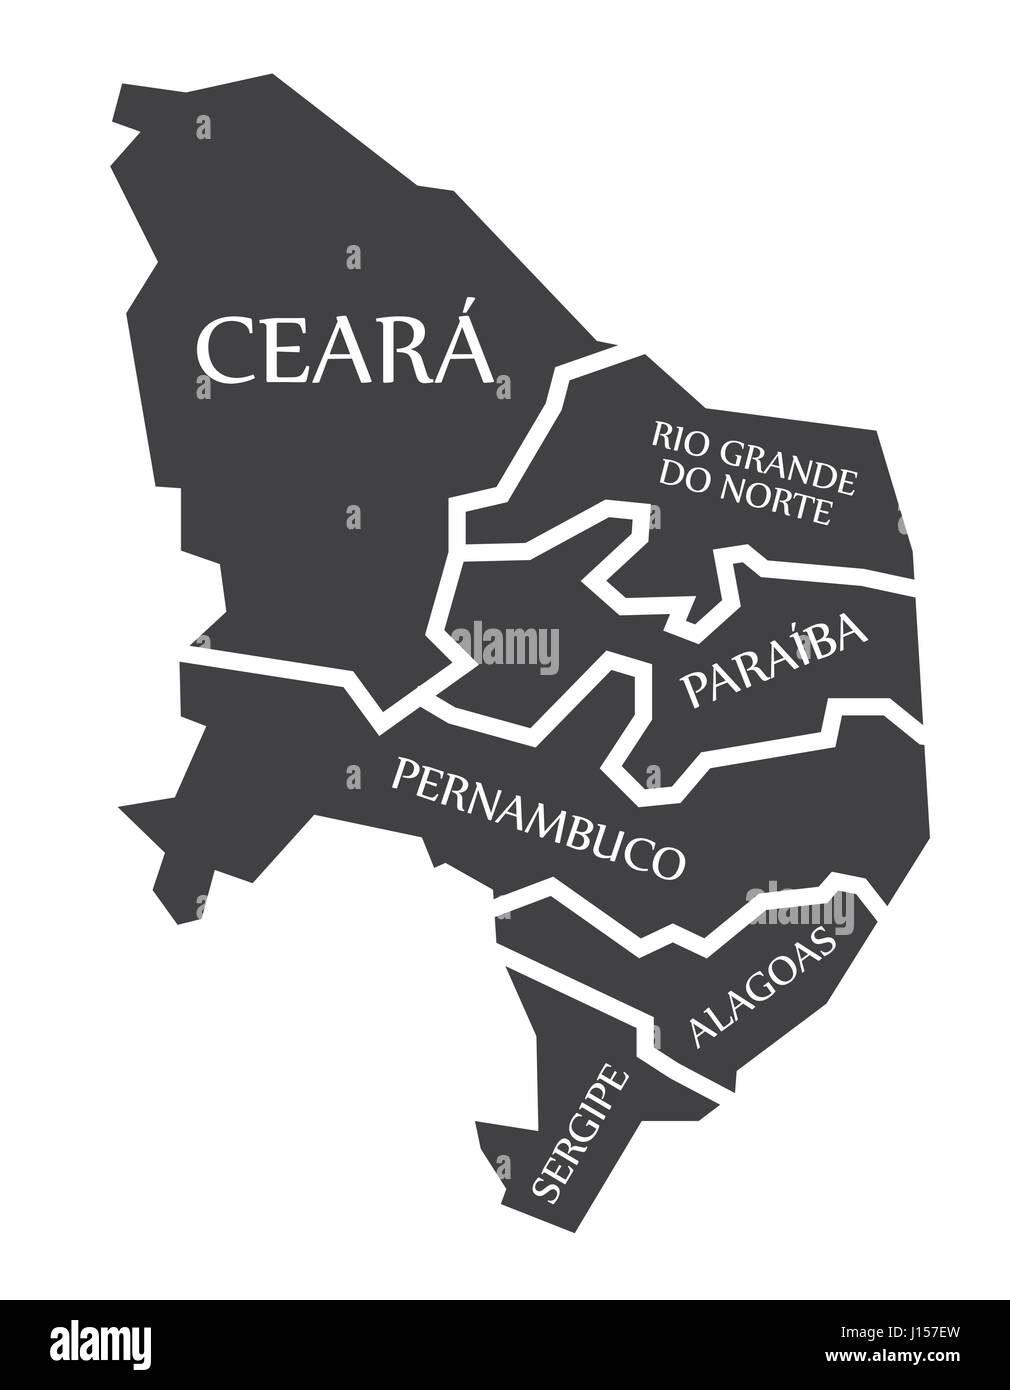 Ceara - Rio Grande Do Norte - Paraiba - Pernambuco - Alagoas - Sergipe Map Brazil illustration Stock Vector